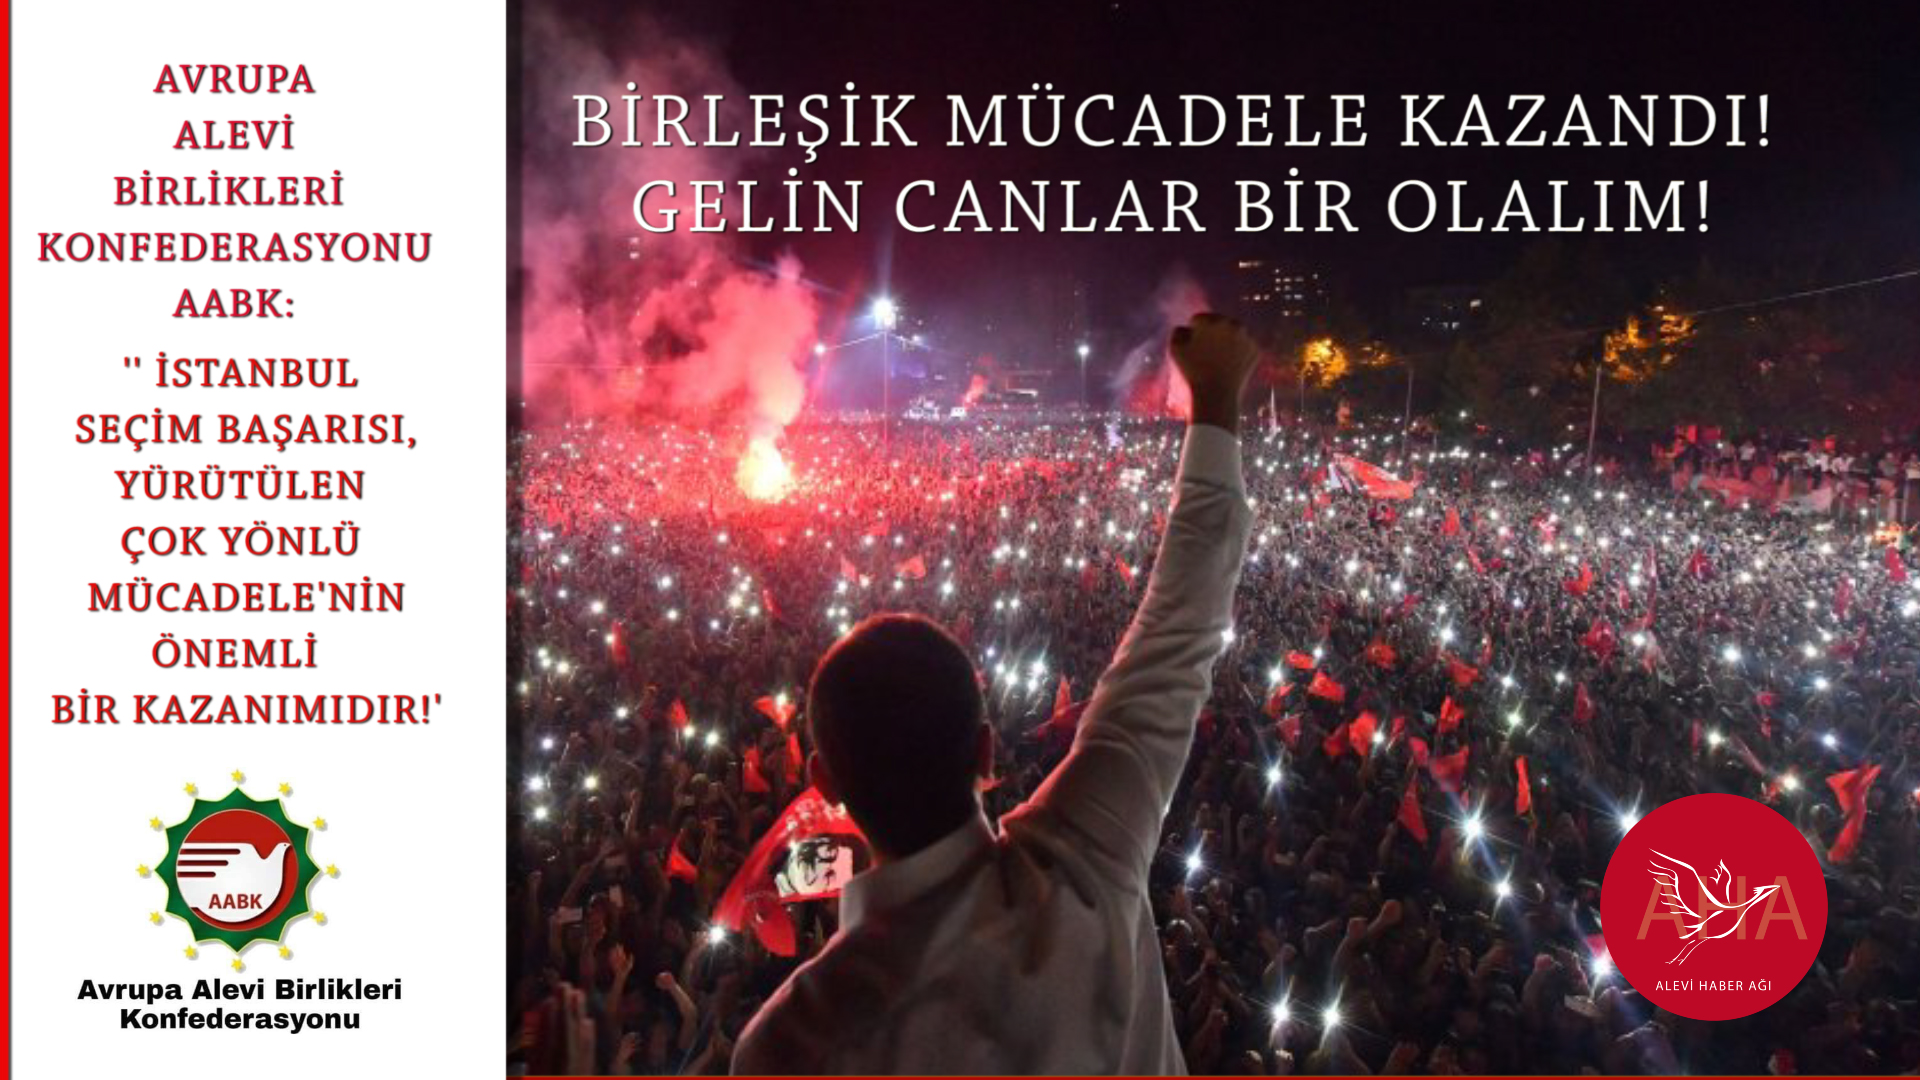 Avrupa Alevi Birlikleri Konfederasyonu (AABK):  ‘‘İstanbul seçim başarısı, yürütülen çok yönlü mücadelenin önemli bir kazanımıdır‘‘